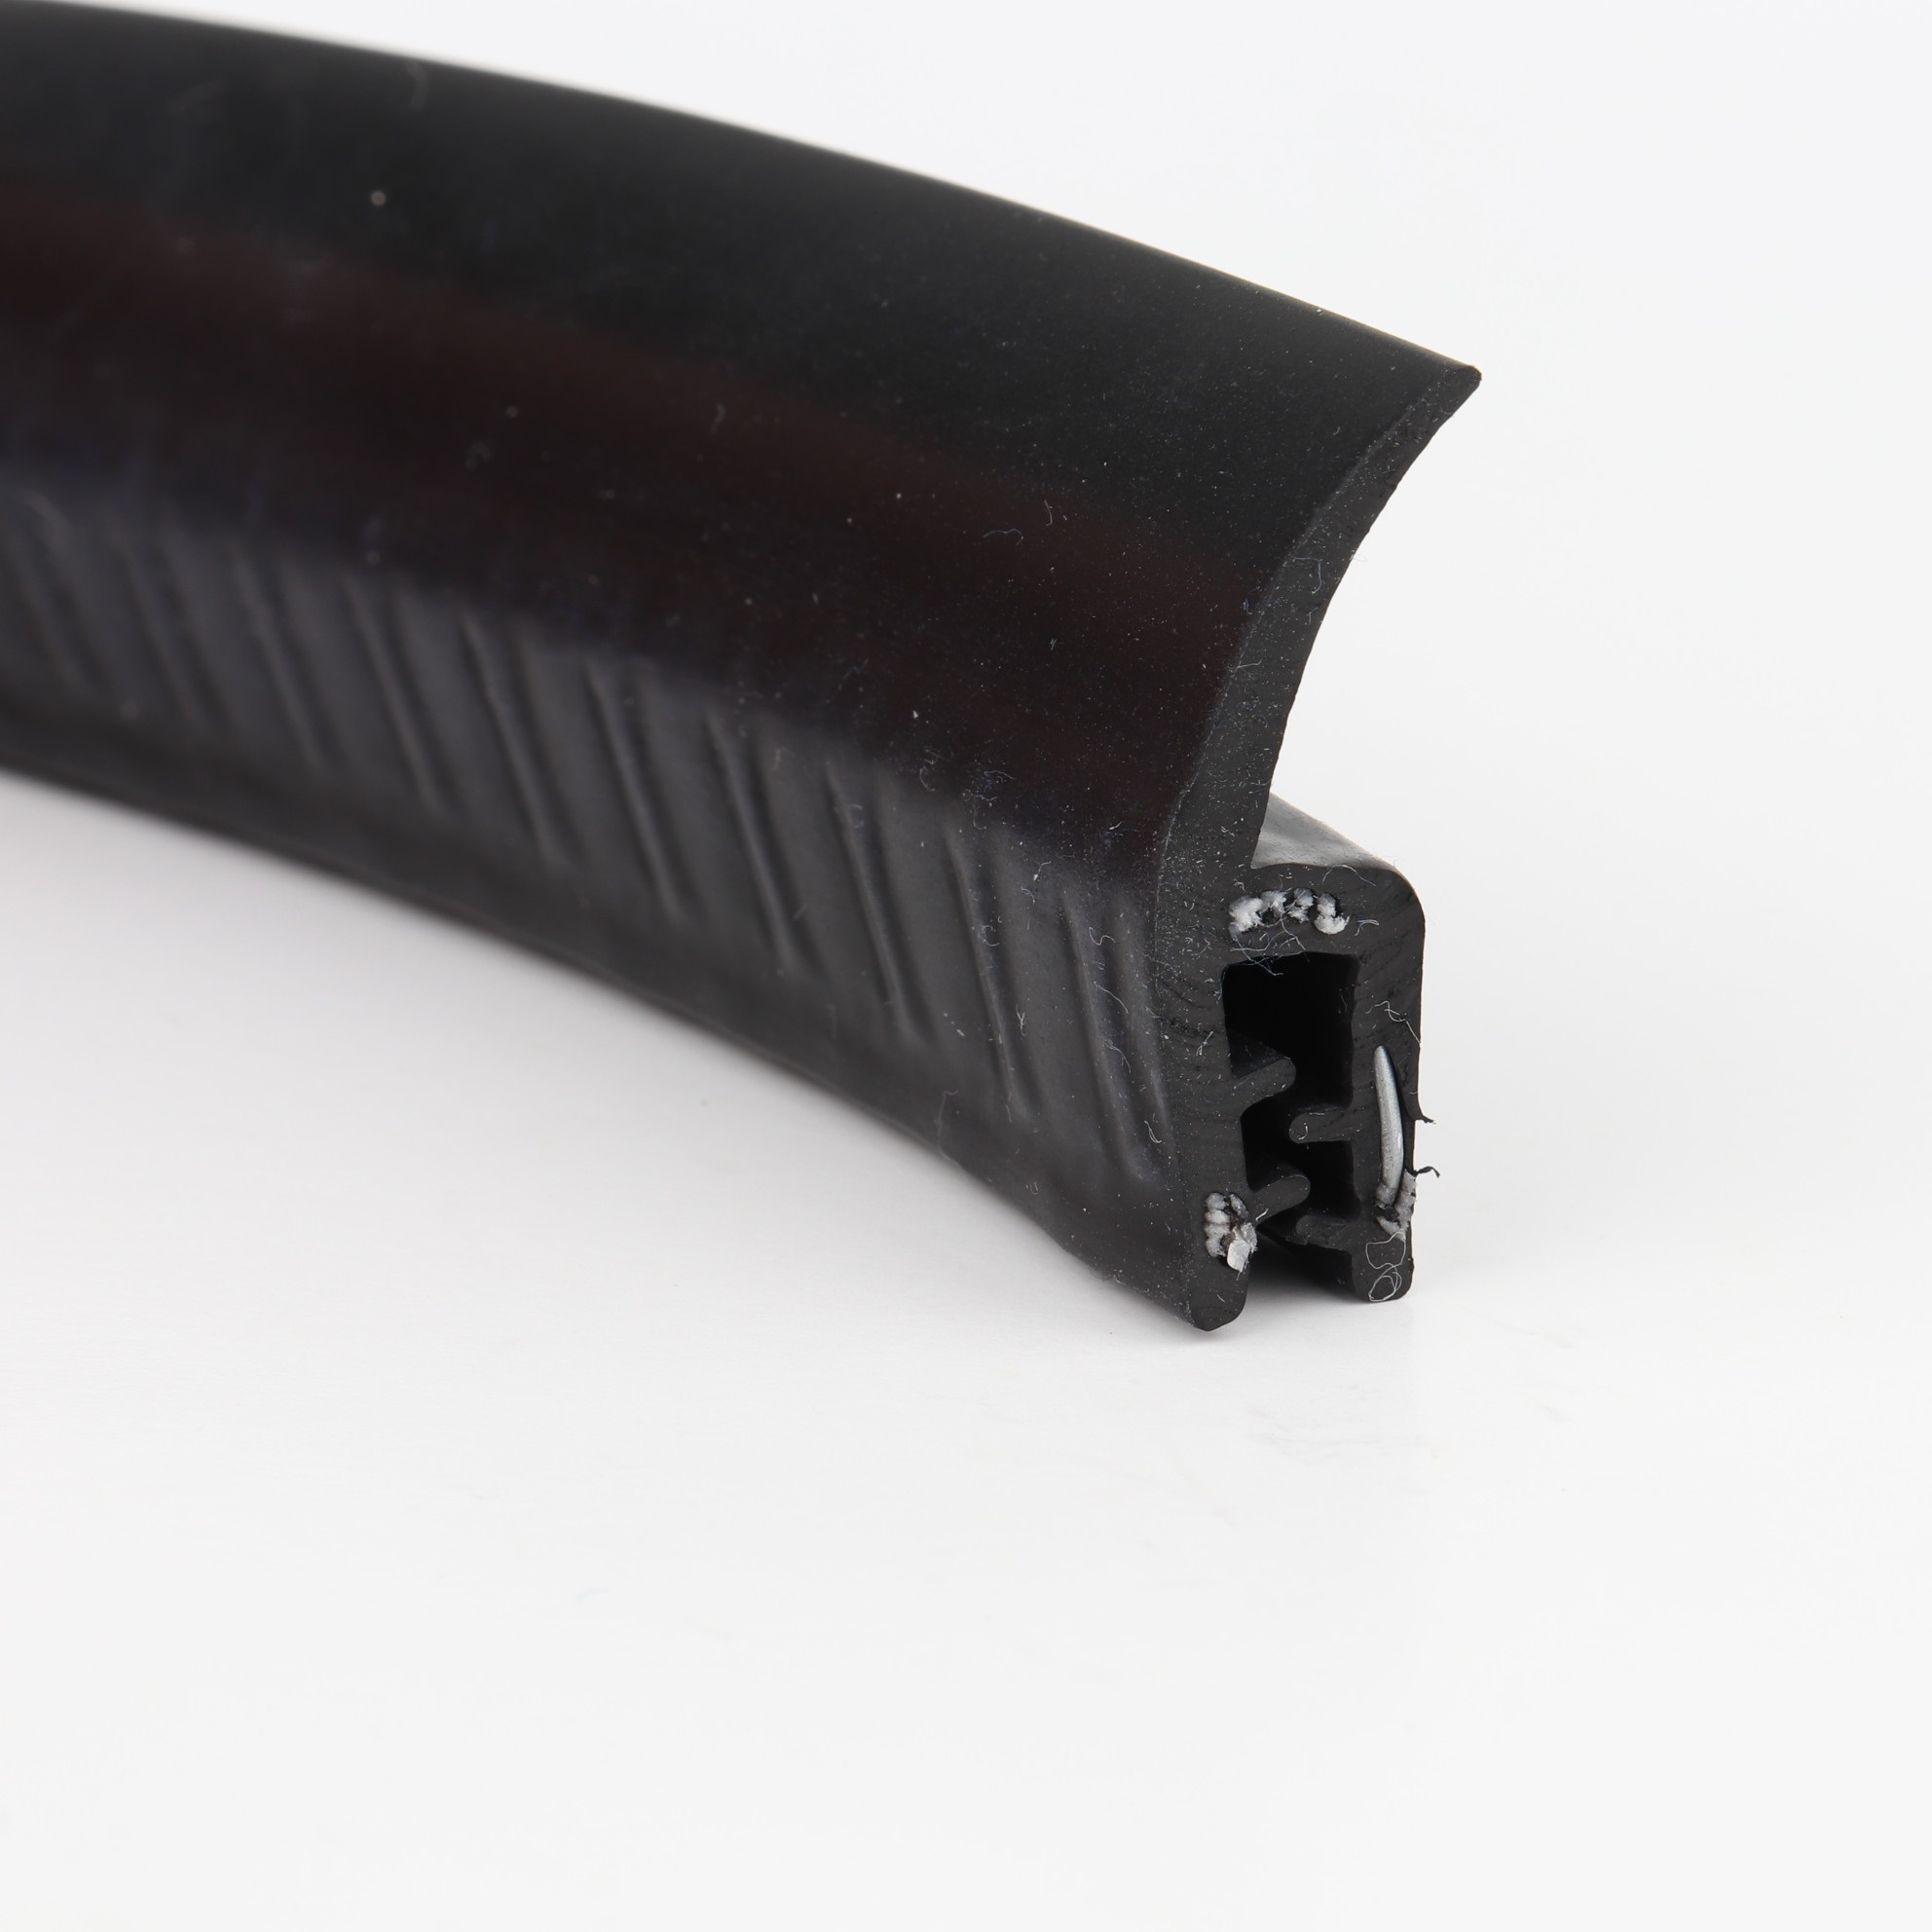 Kantenschutz-Dichtprofil - EPDM - mit Dichtlippe oben - Klemmbereich 1,5-2,5mm